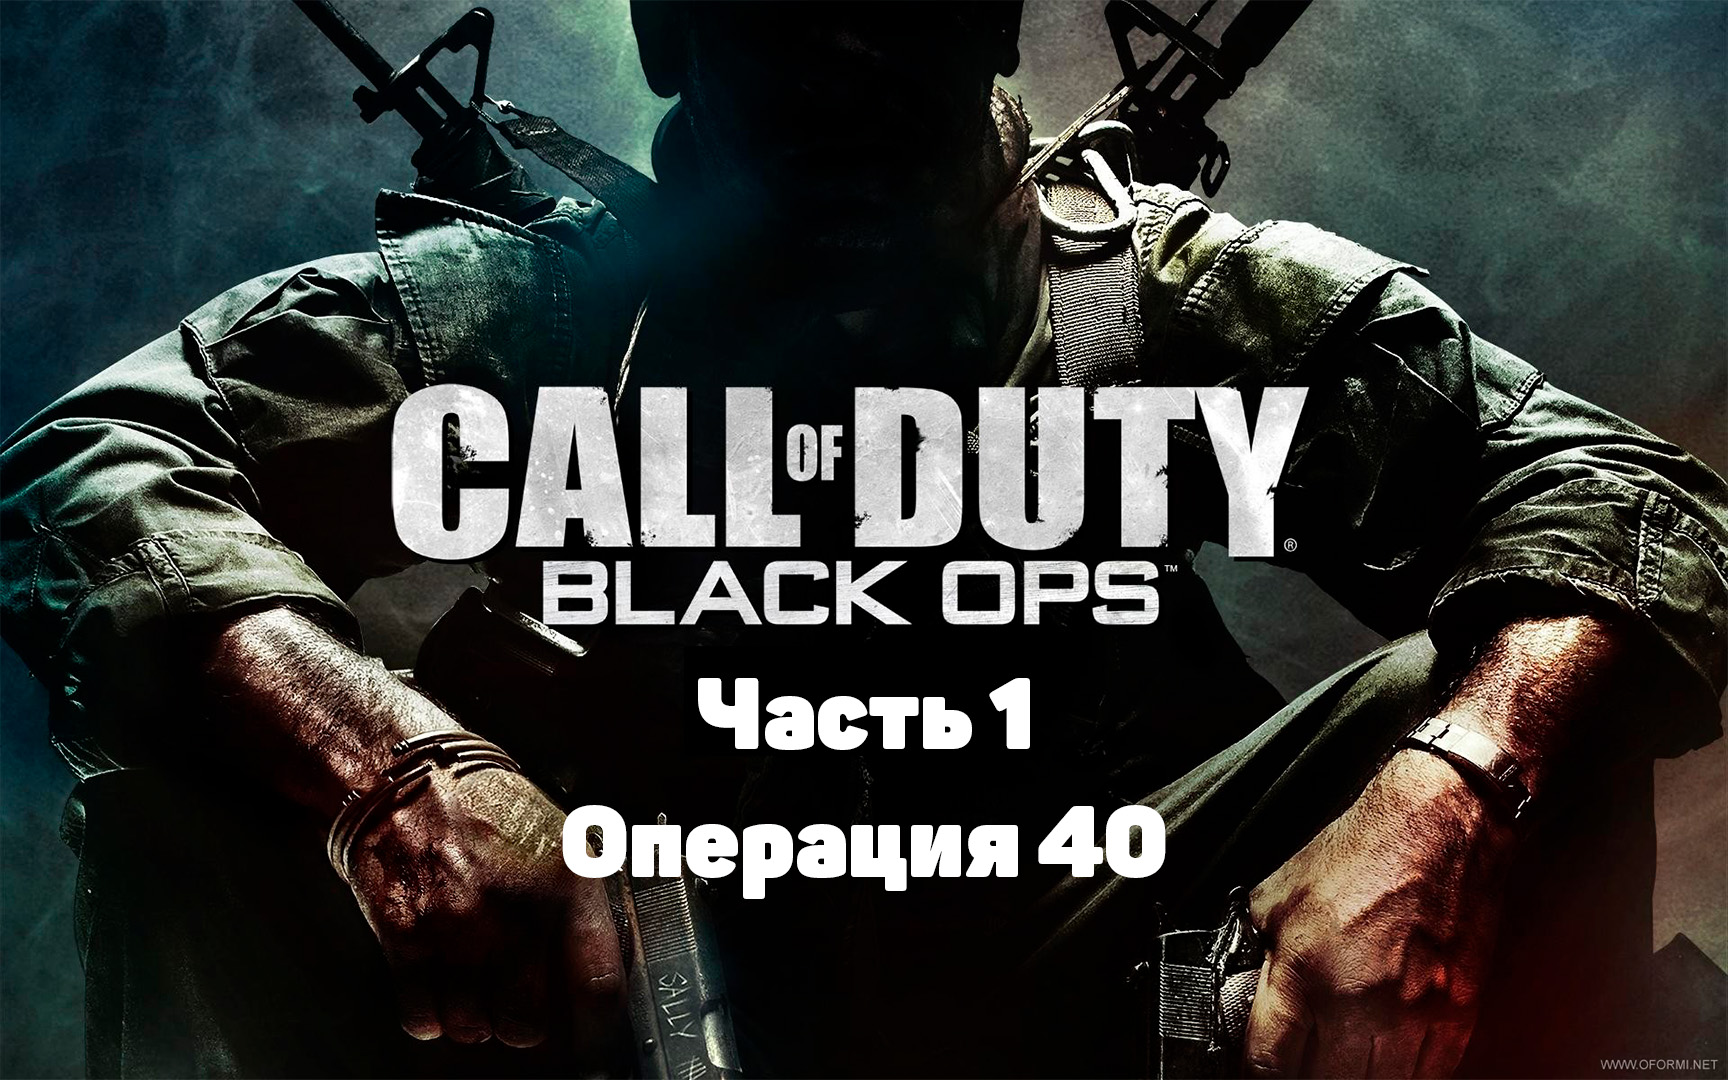 Call of Duty: Black Ops Часть 1 Операция 40(Прохождение) #callofduty #blackops #2022 #gametour